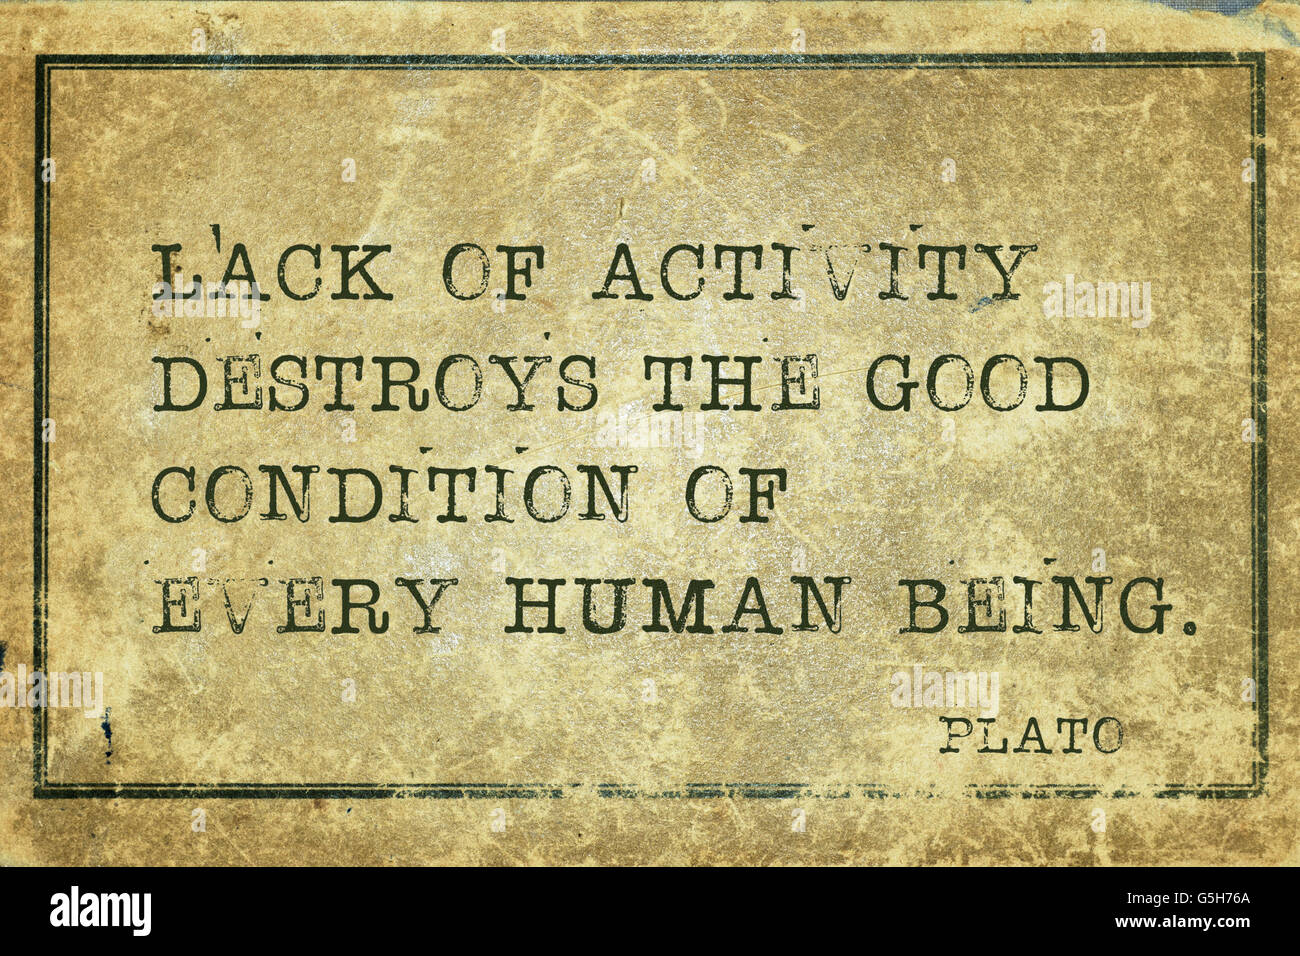 La mancanza di attività distrugge la buona - antico filosofo greco Platone preventivo stampato su grunge cartone vintage Foto Stock